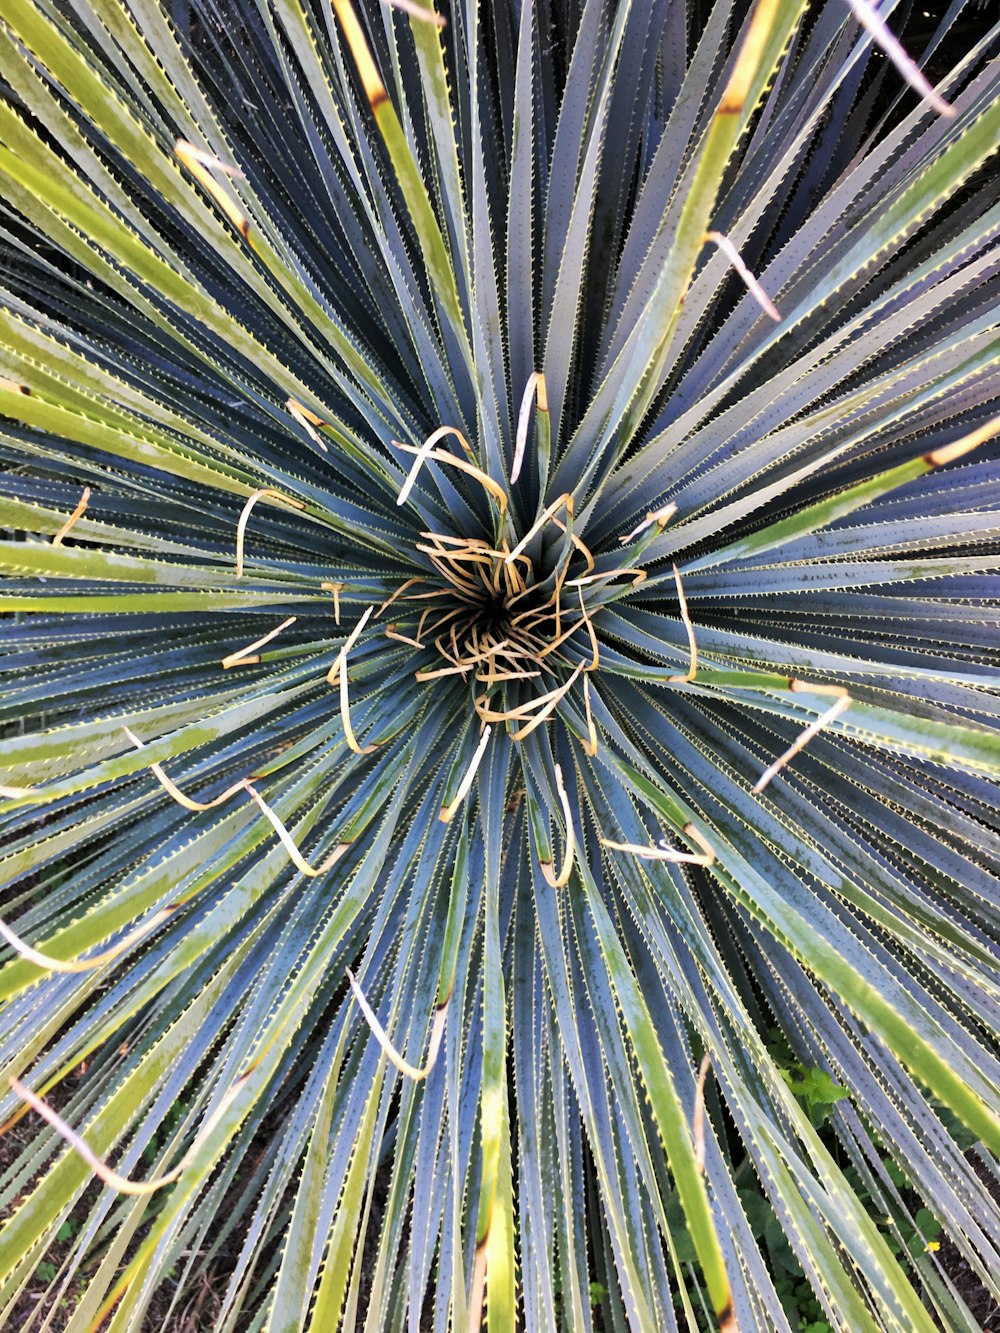 um close up de uma planta com muitas folhas